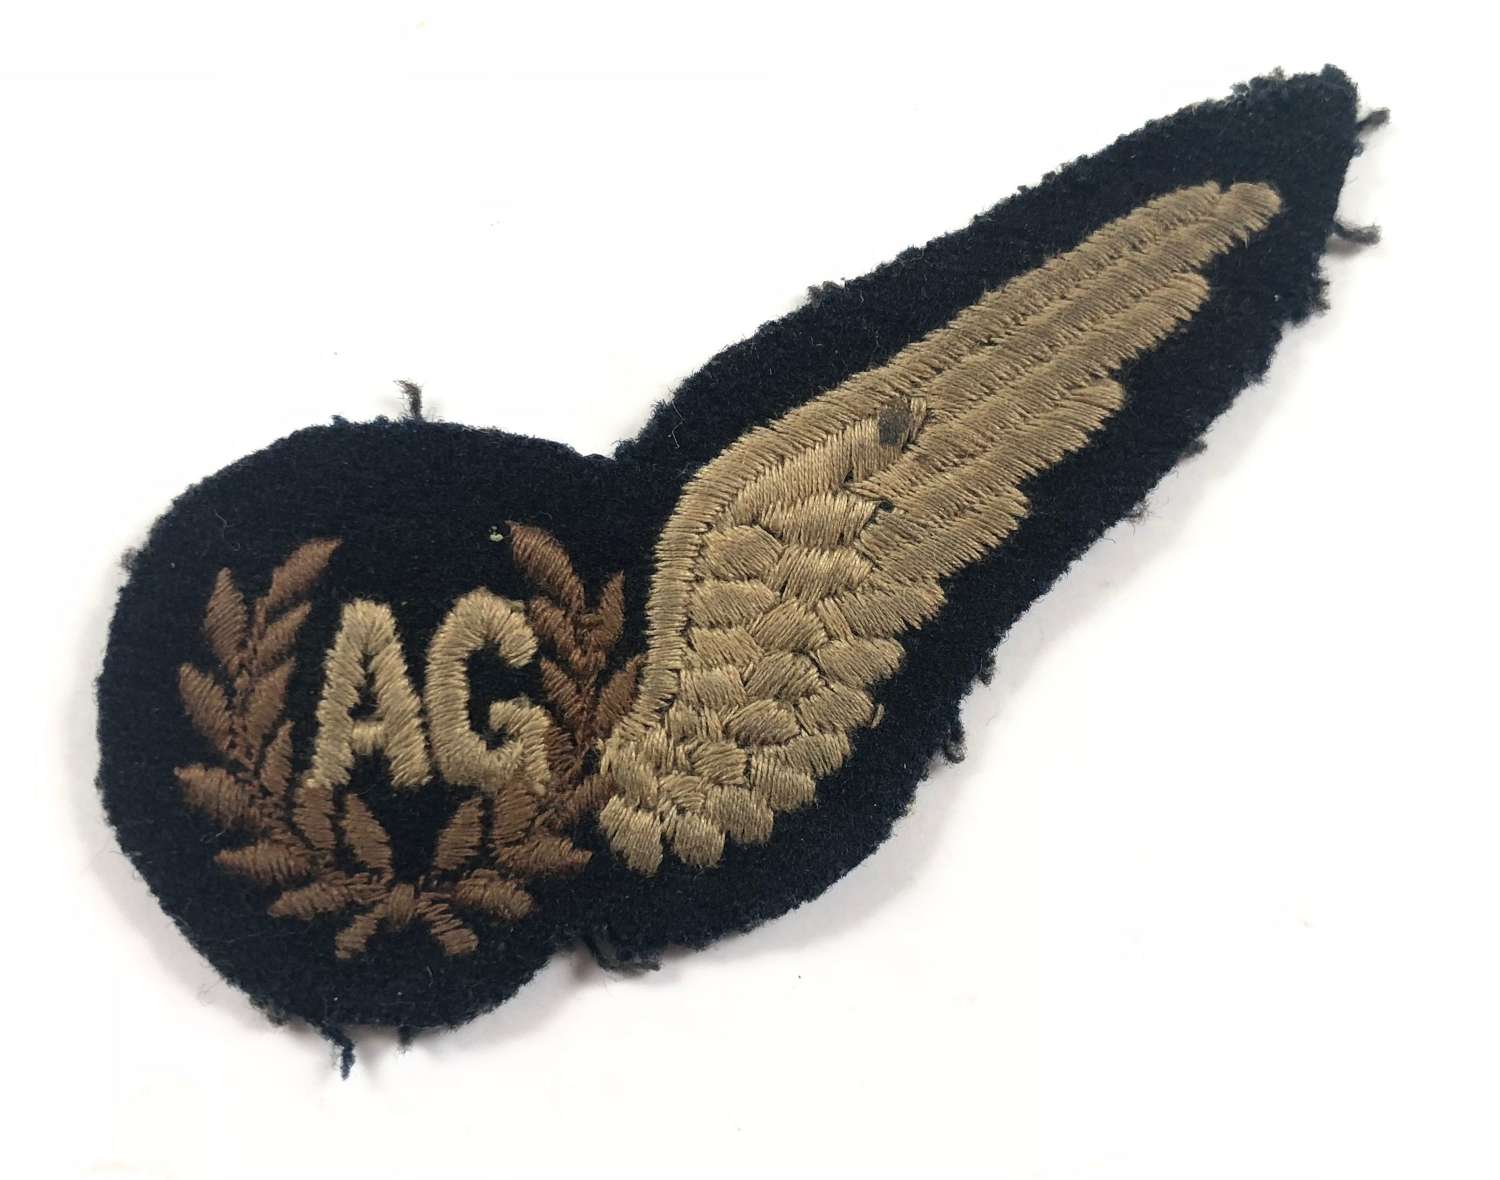 WW2 RAF Air Gunner’s Brevet Badge.